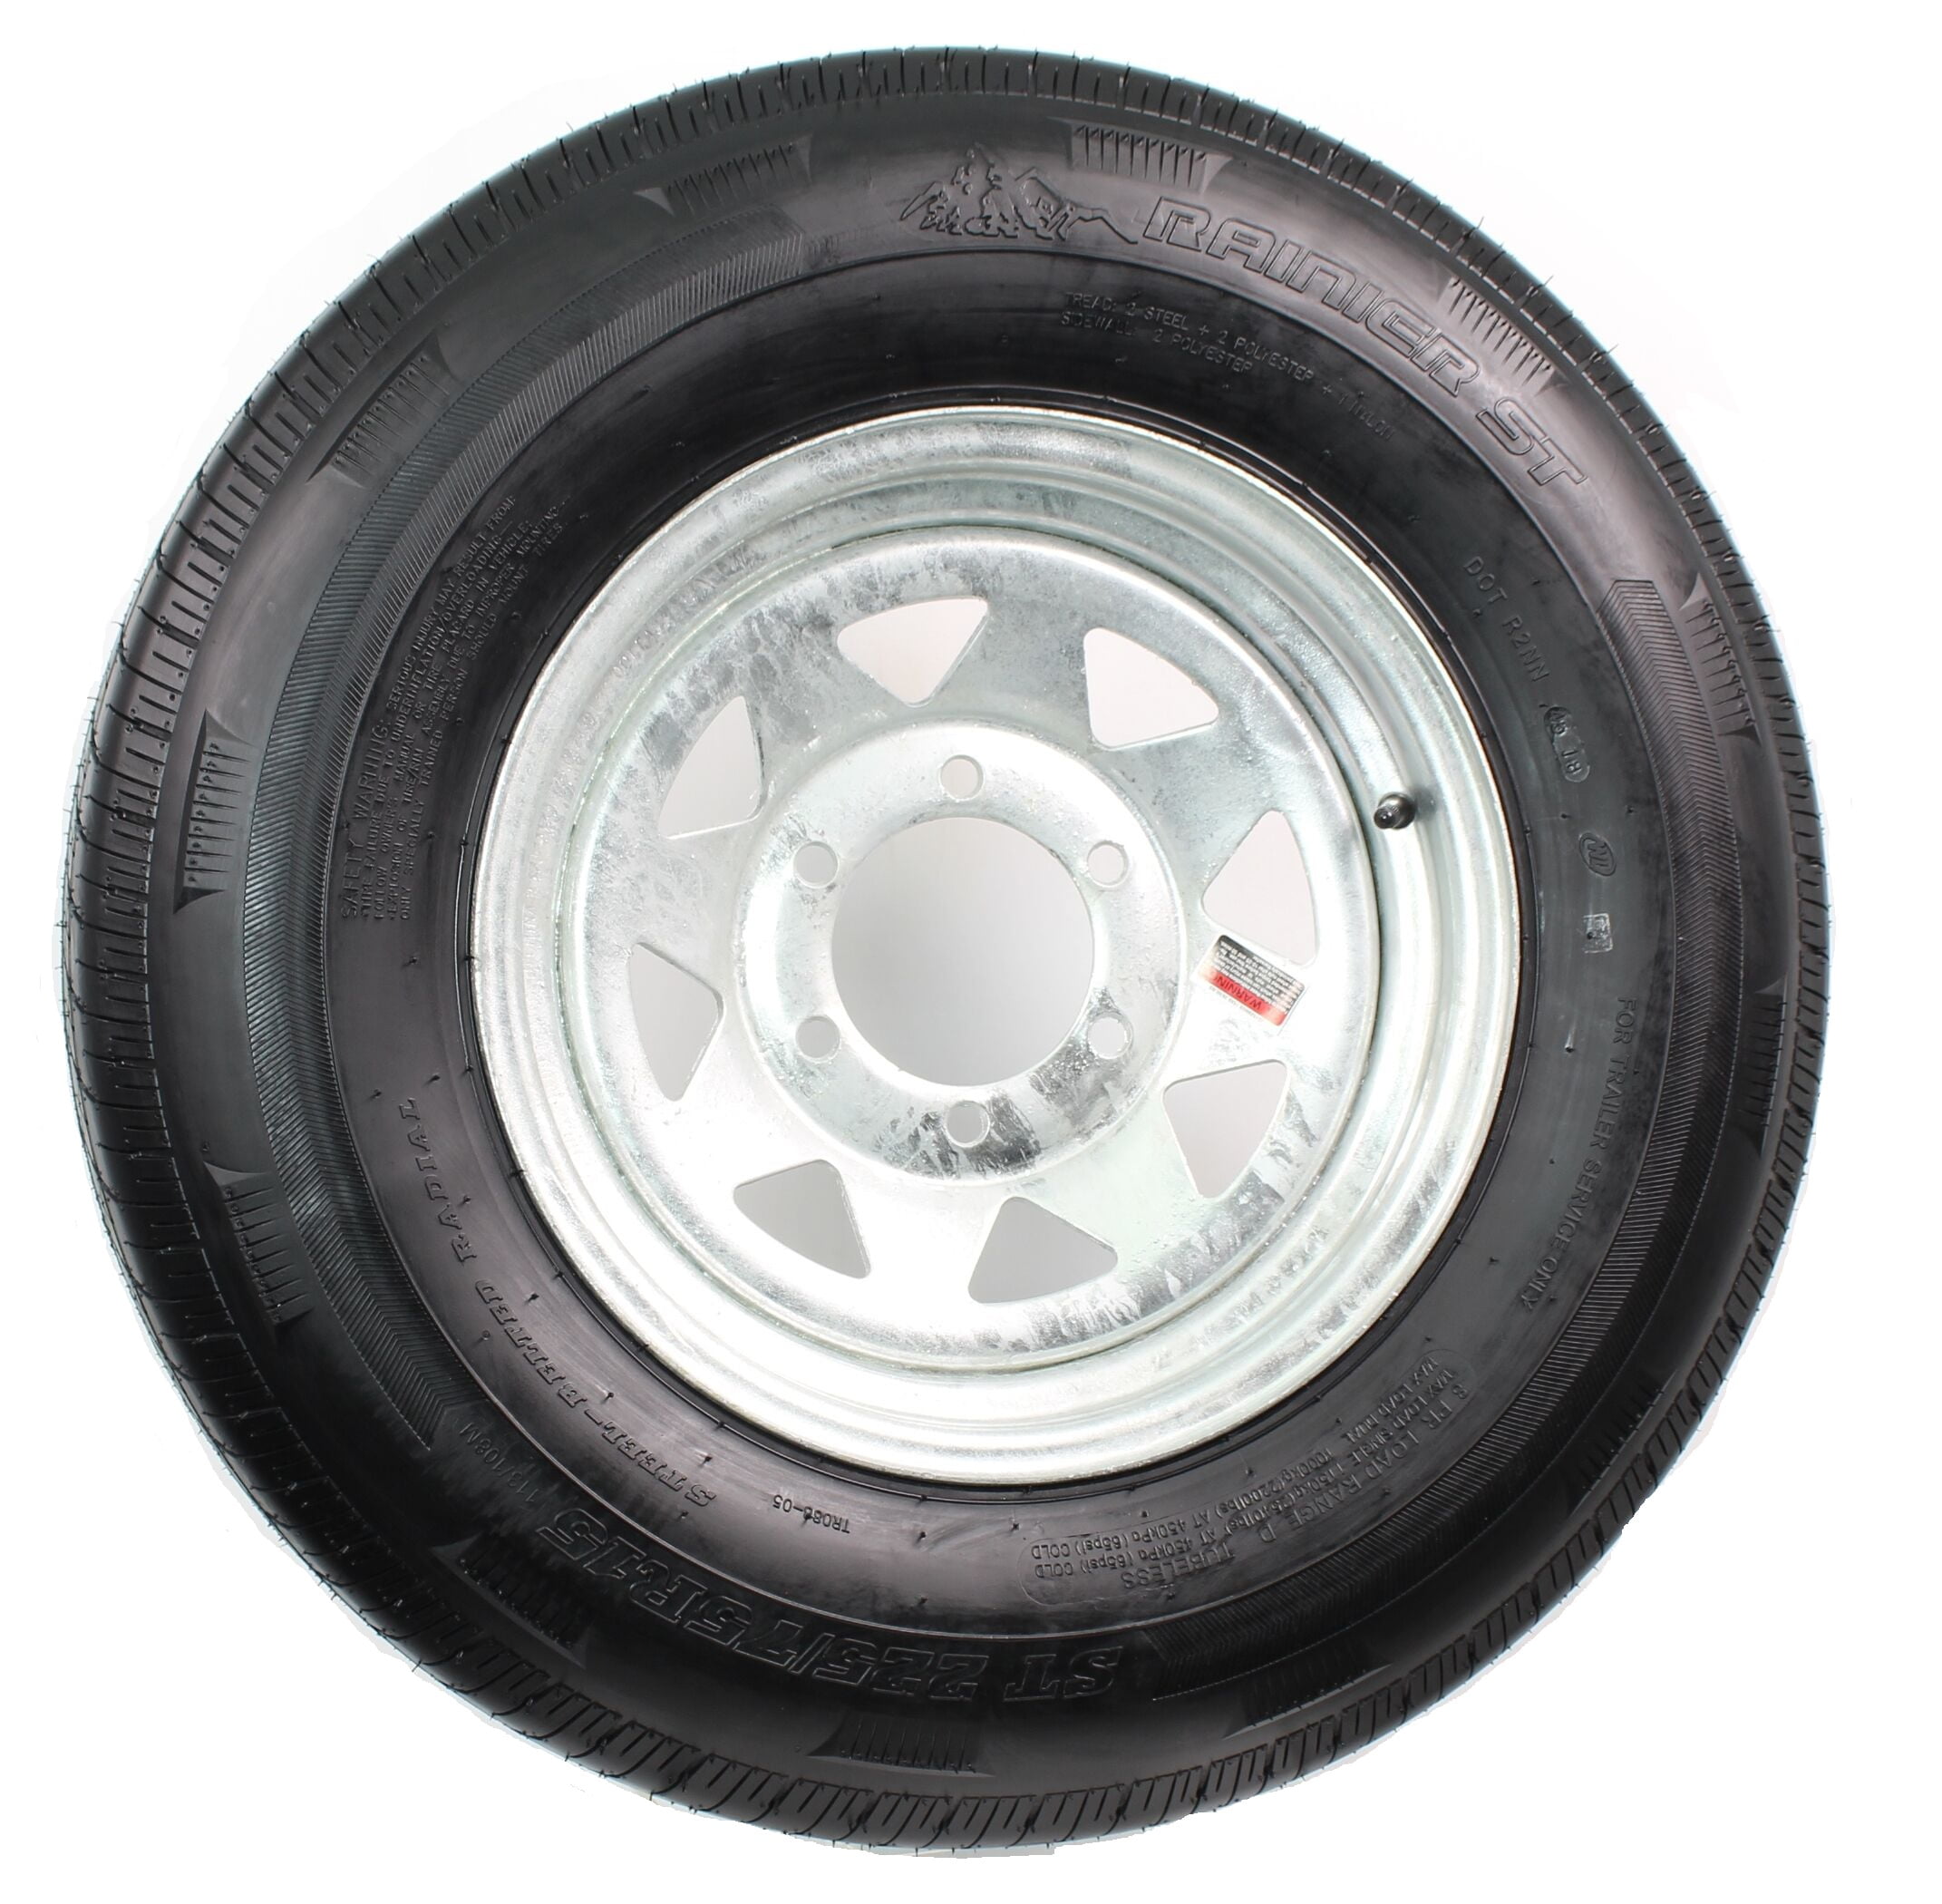 LRD 6 Bolt Galvanized Spoke eCustomRim Trailer Tire On Rim ST225/75D15 225/75 D 15 in 